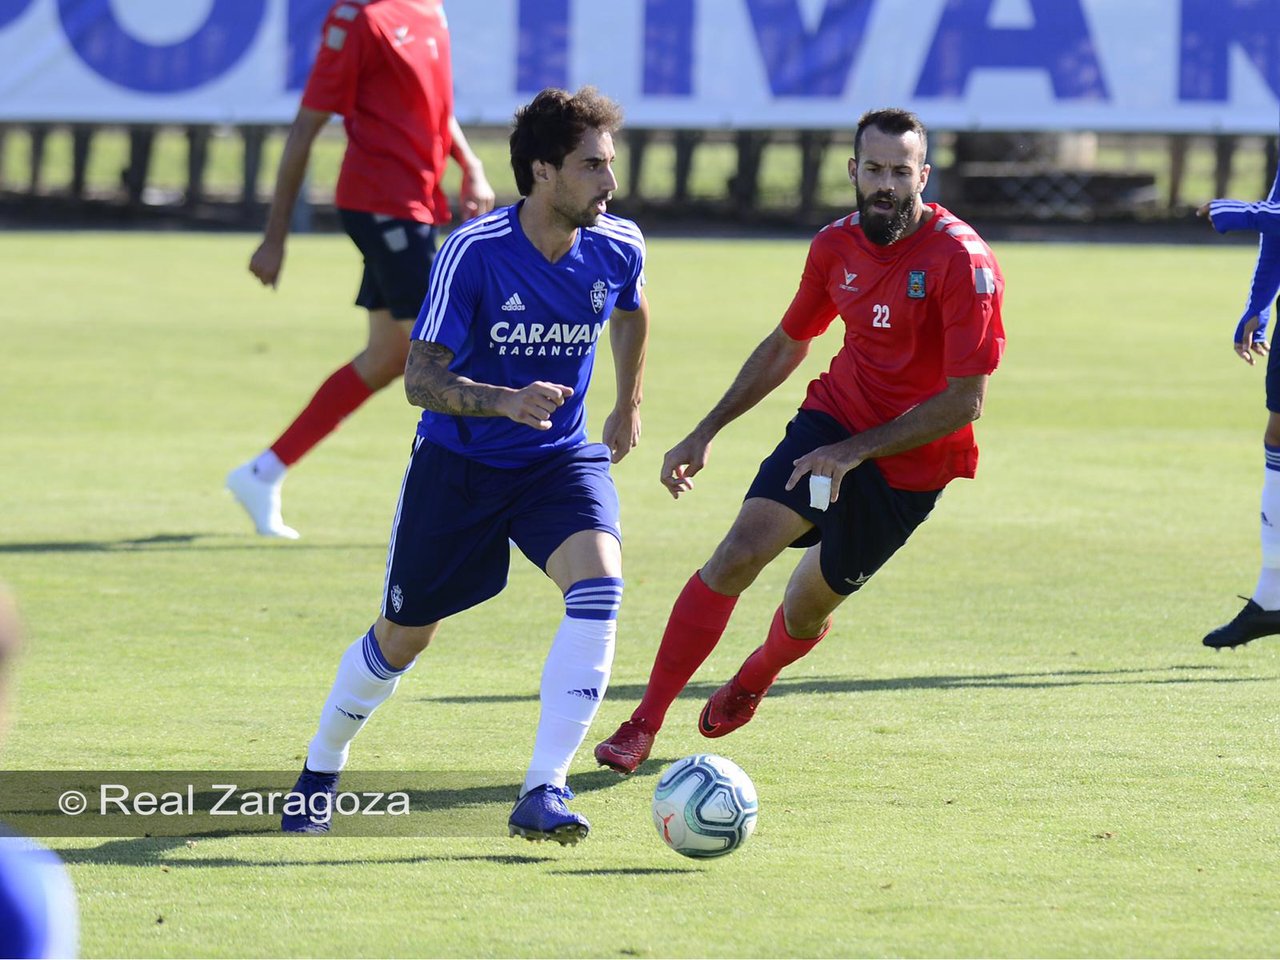 Imagen durante el partido amistoso entre el Real Zaragoza y el Tarazona